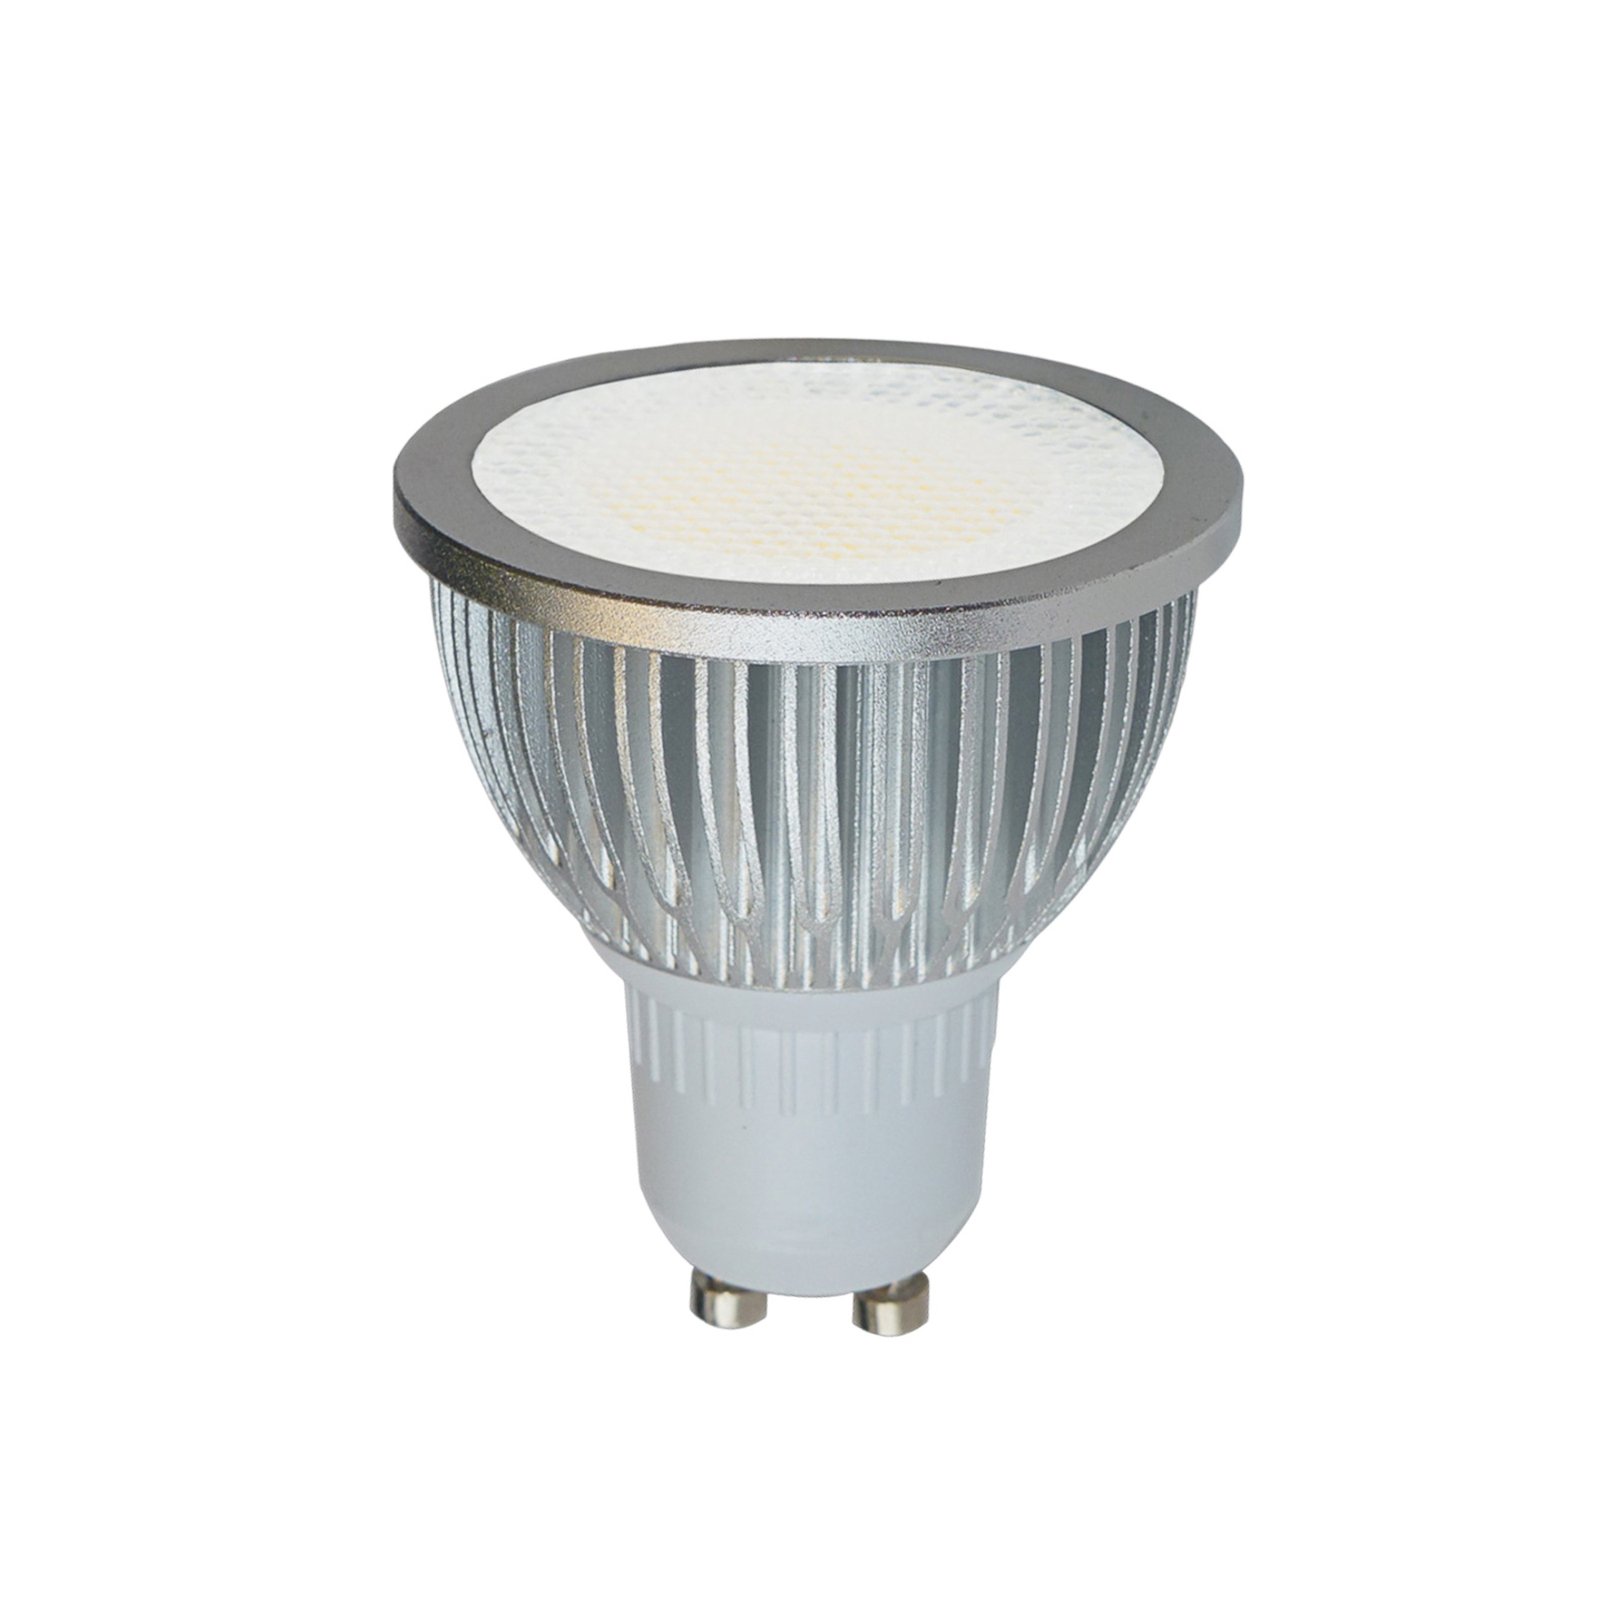 GU10 5W 829 LED lampadina riflettore, 85°